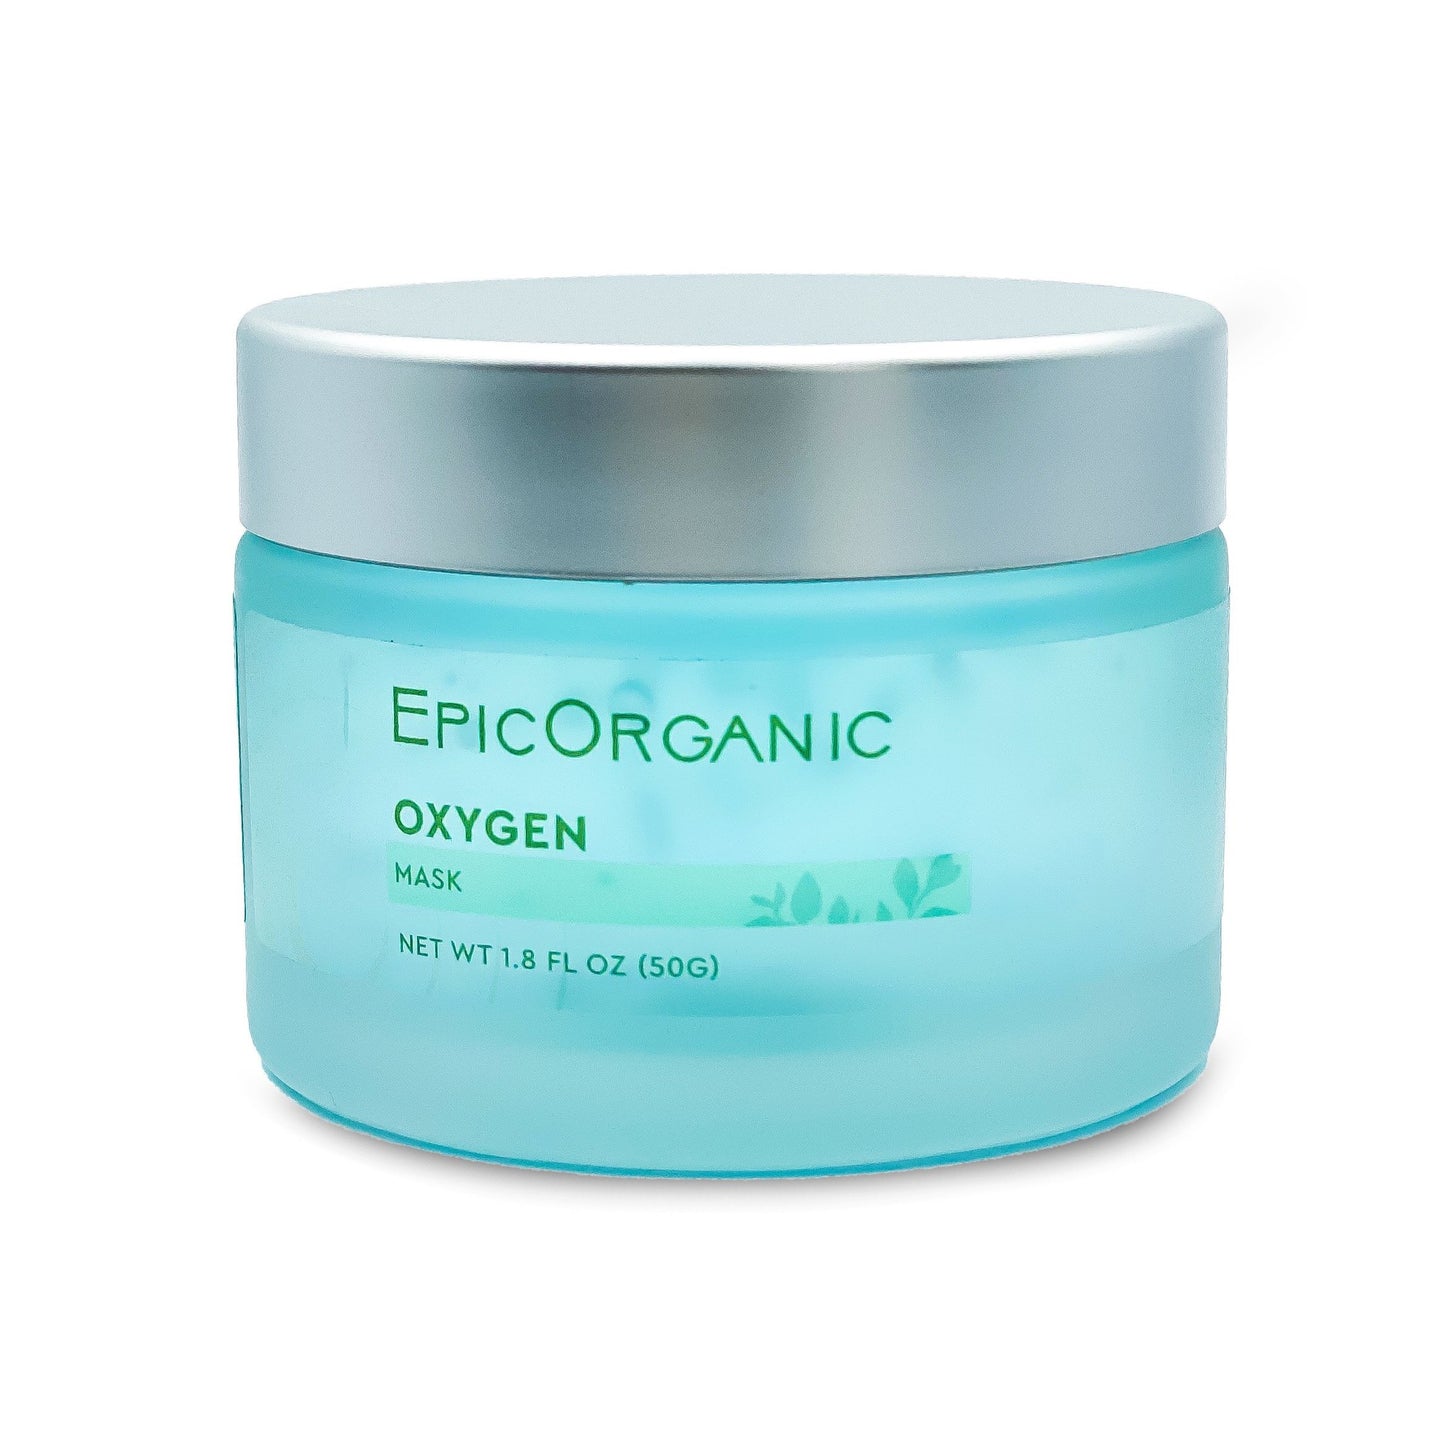 Epic Organic Oxygen Mask (1.8 oz) Epic Organic